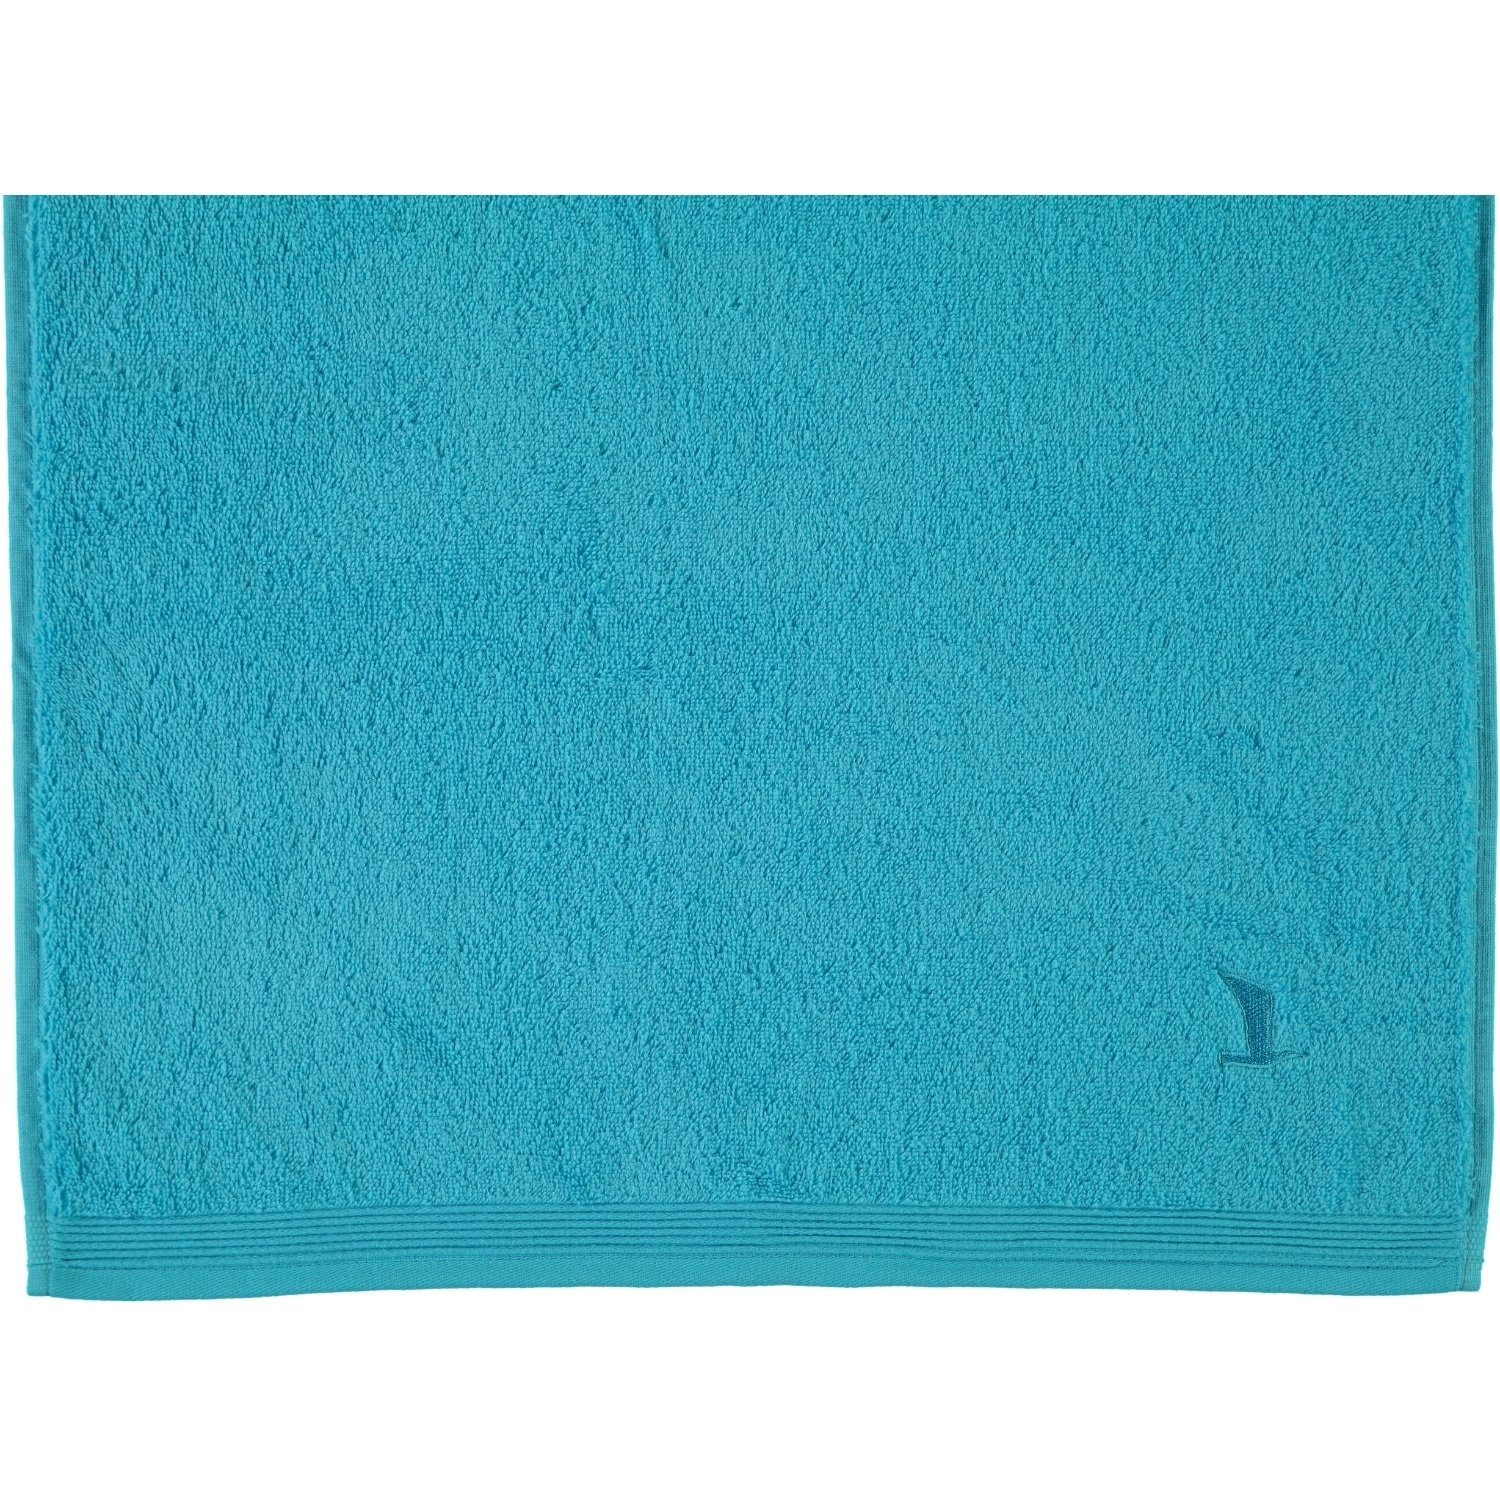 Möve Handtücher Superwuschel, 100% Baumwolle turquoise 194 